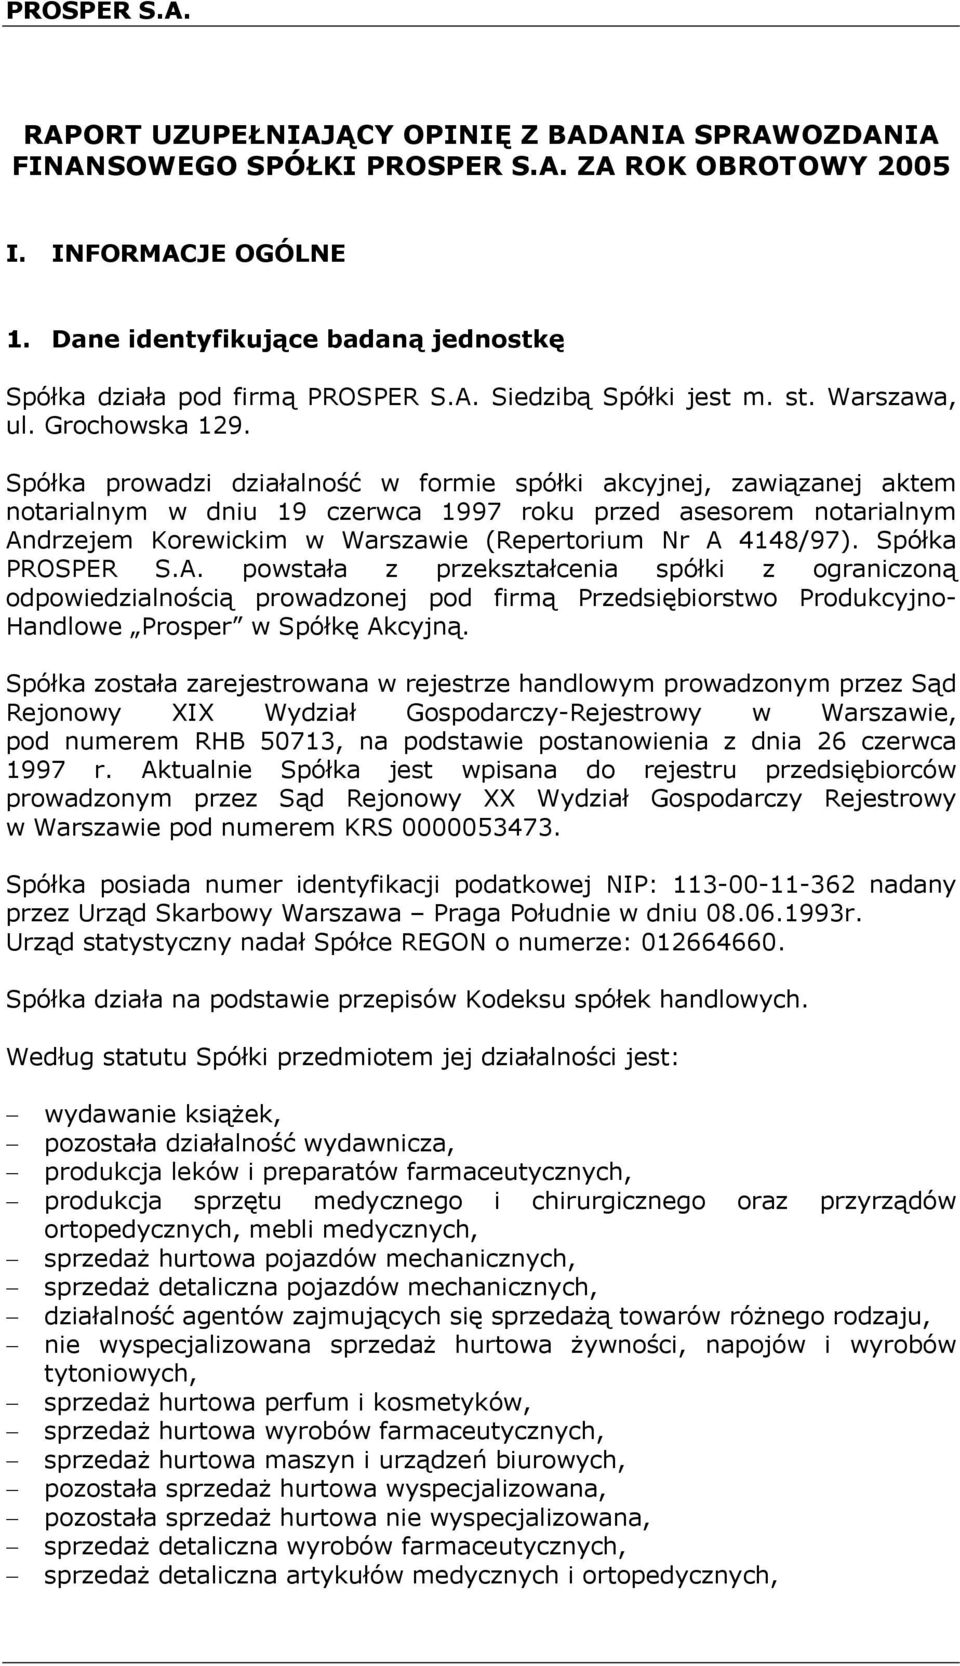 Spółka prowadzi działalność w formie spółki akcyjnej, zawiązanej aktem notarialnym w dniu 19 czerwca 1997 roku przed asesorem notarialnym Andrzejem Korewickim w Warszawie (Repertorium Nr A 4148/97).